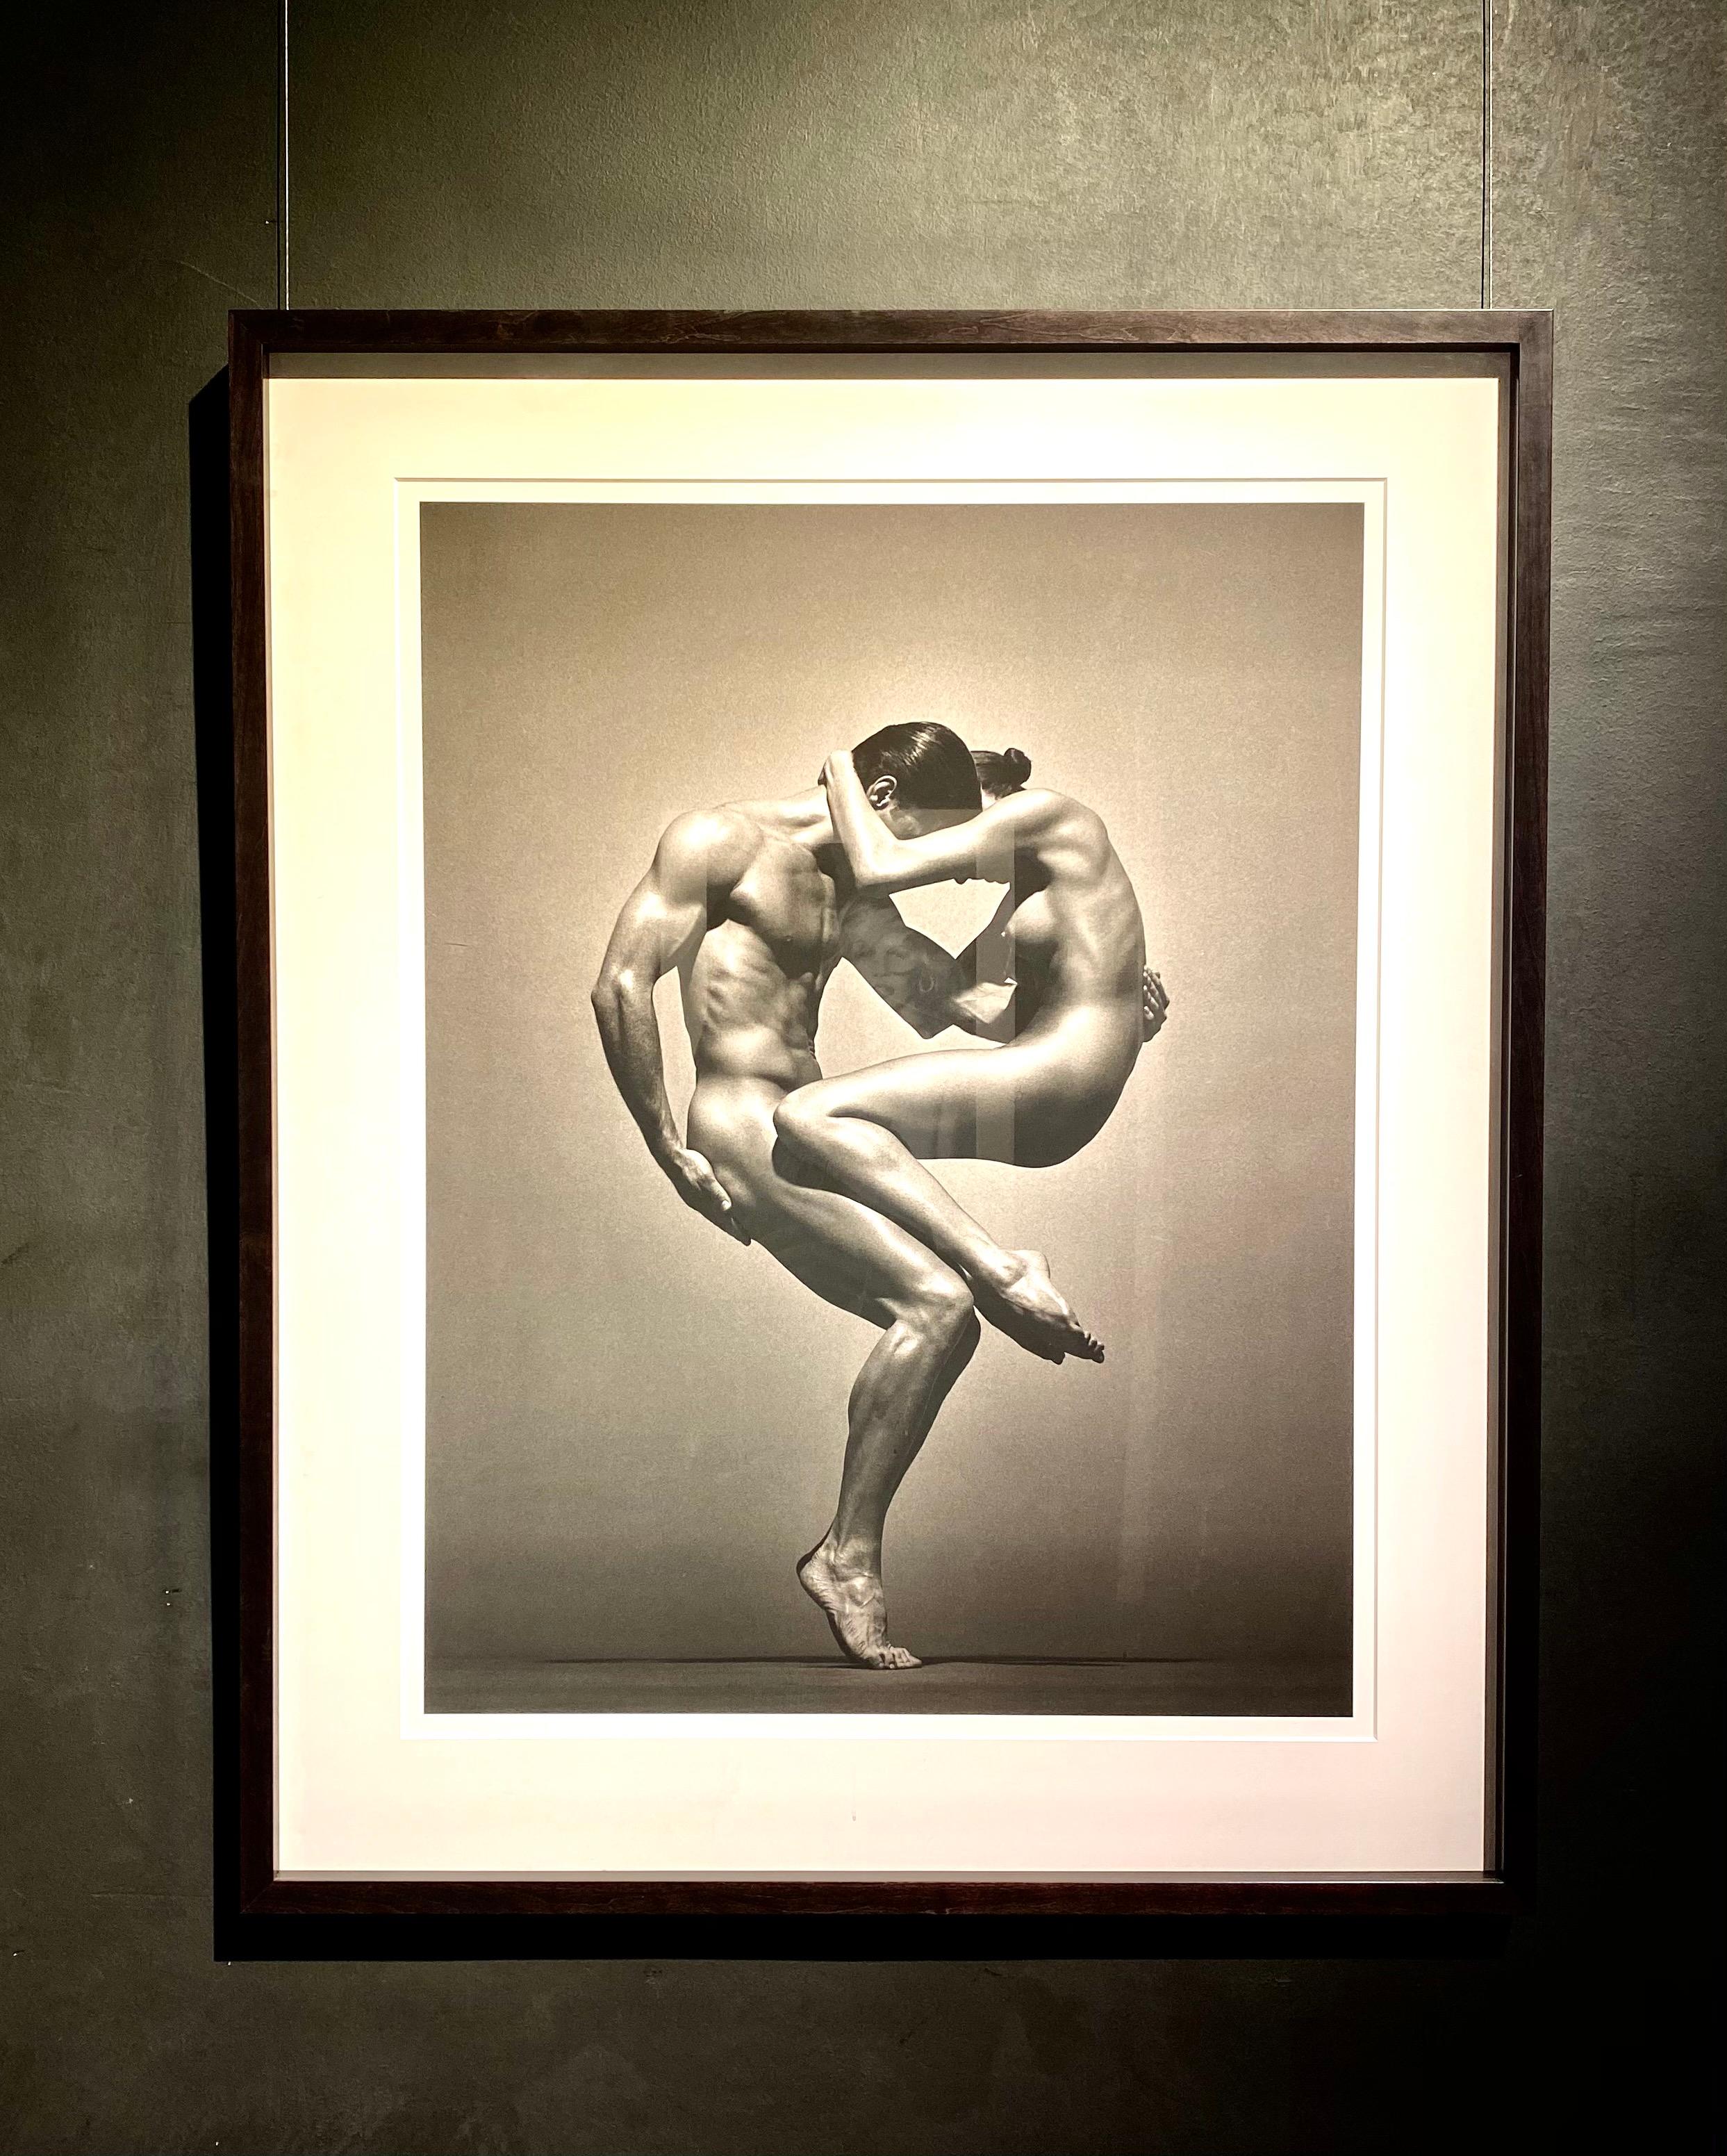 Sina&Anthony, Vienne - deux nus dans une pose athlétique, photographie d'art, 1995 - Photograph de Andreas H. Bitesnich